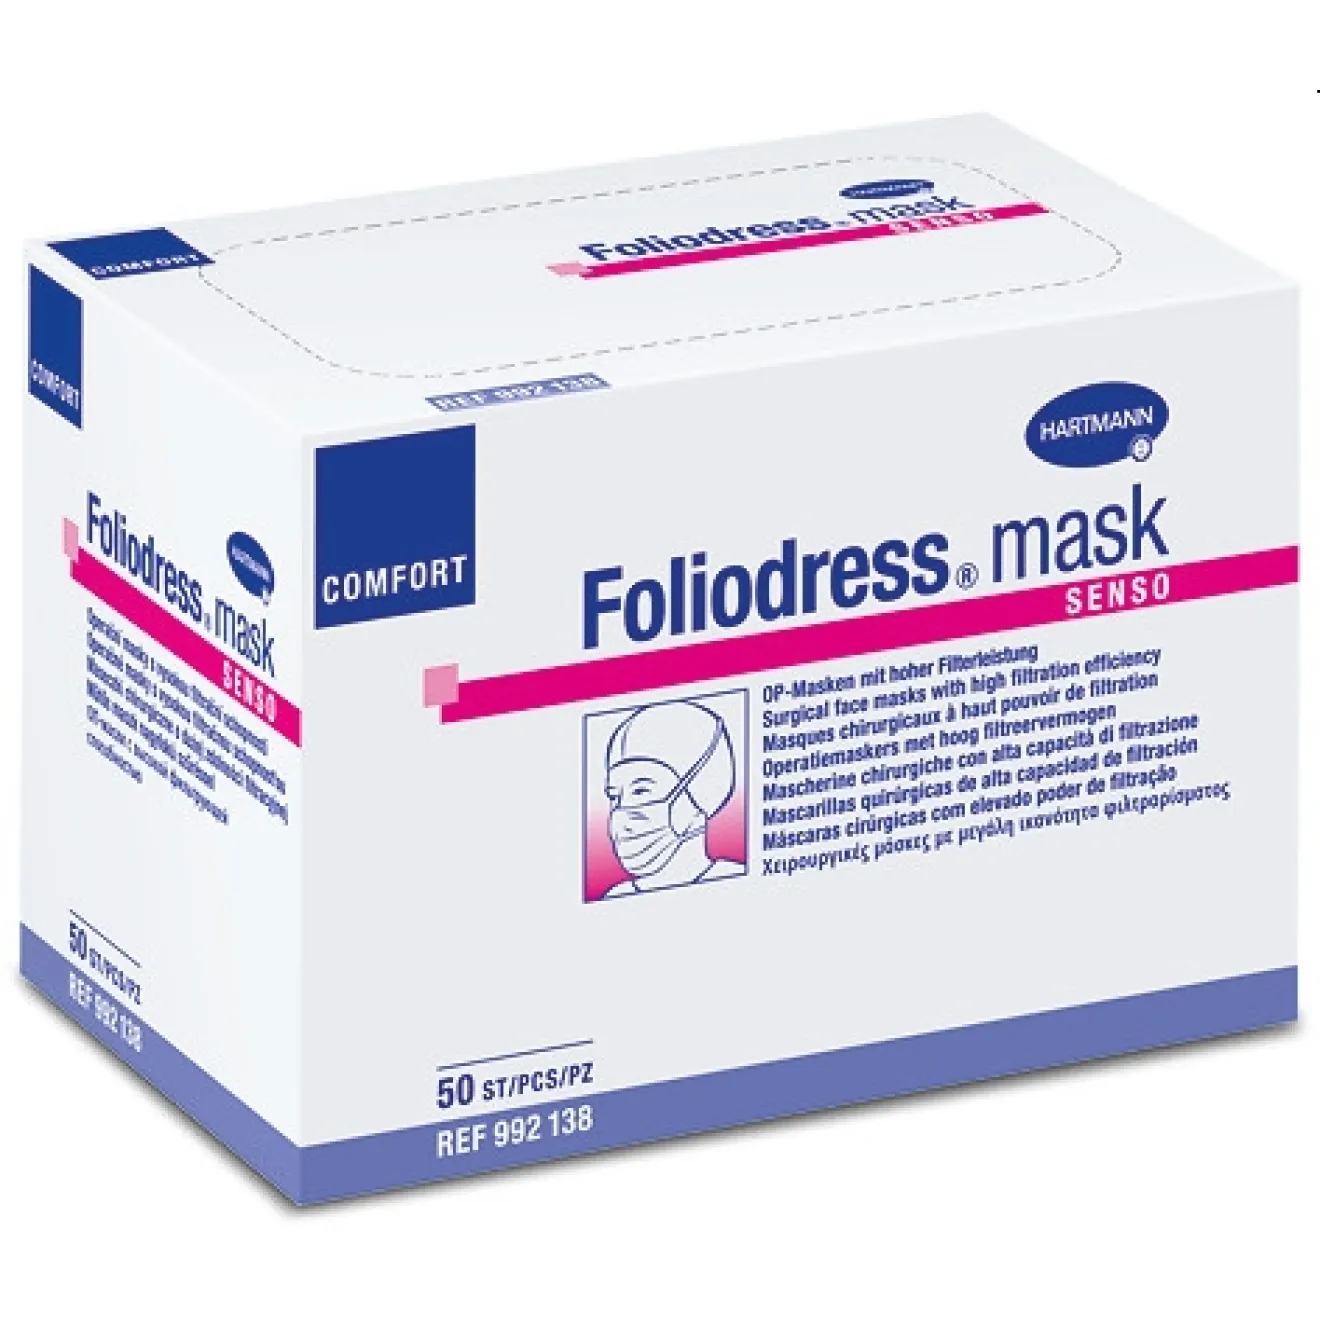 FOLIODRESS mask Comfort senso grün OP-Masken 50 ST